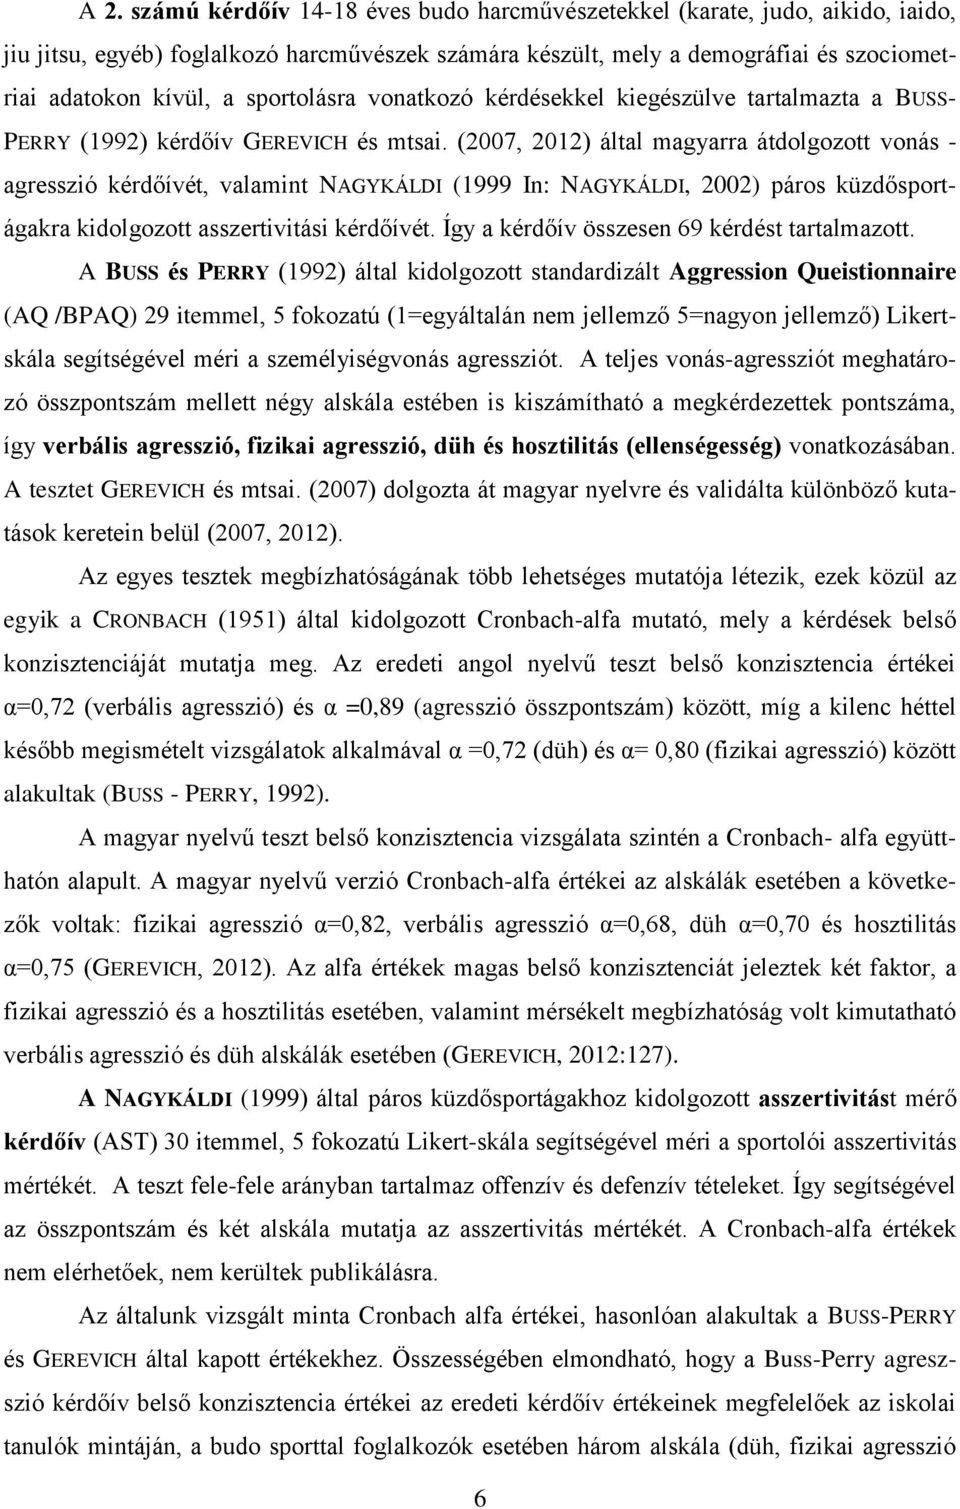 (2007, 2012) által magyarra átdolgozott vonás - agresszió kérdőívét, valamint NAGYKÁLDI (1999 In: NAGYKÁLDI, 2002) páros küzdősportágakra kidolgozott asszertivitási kérdőívét.